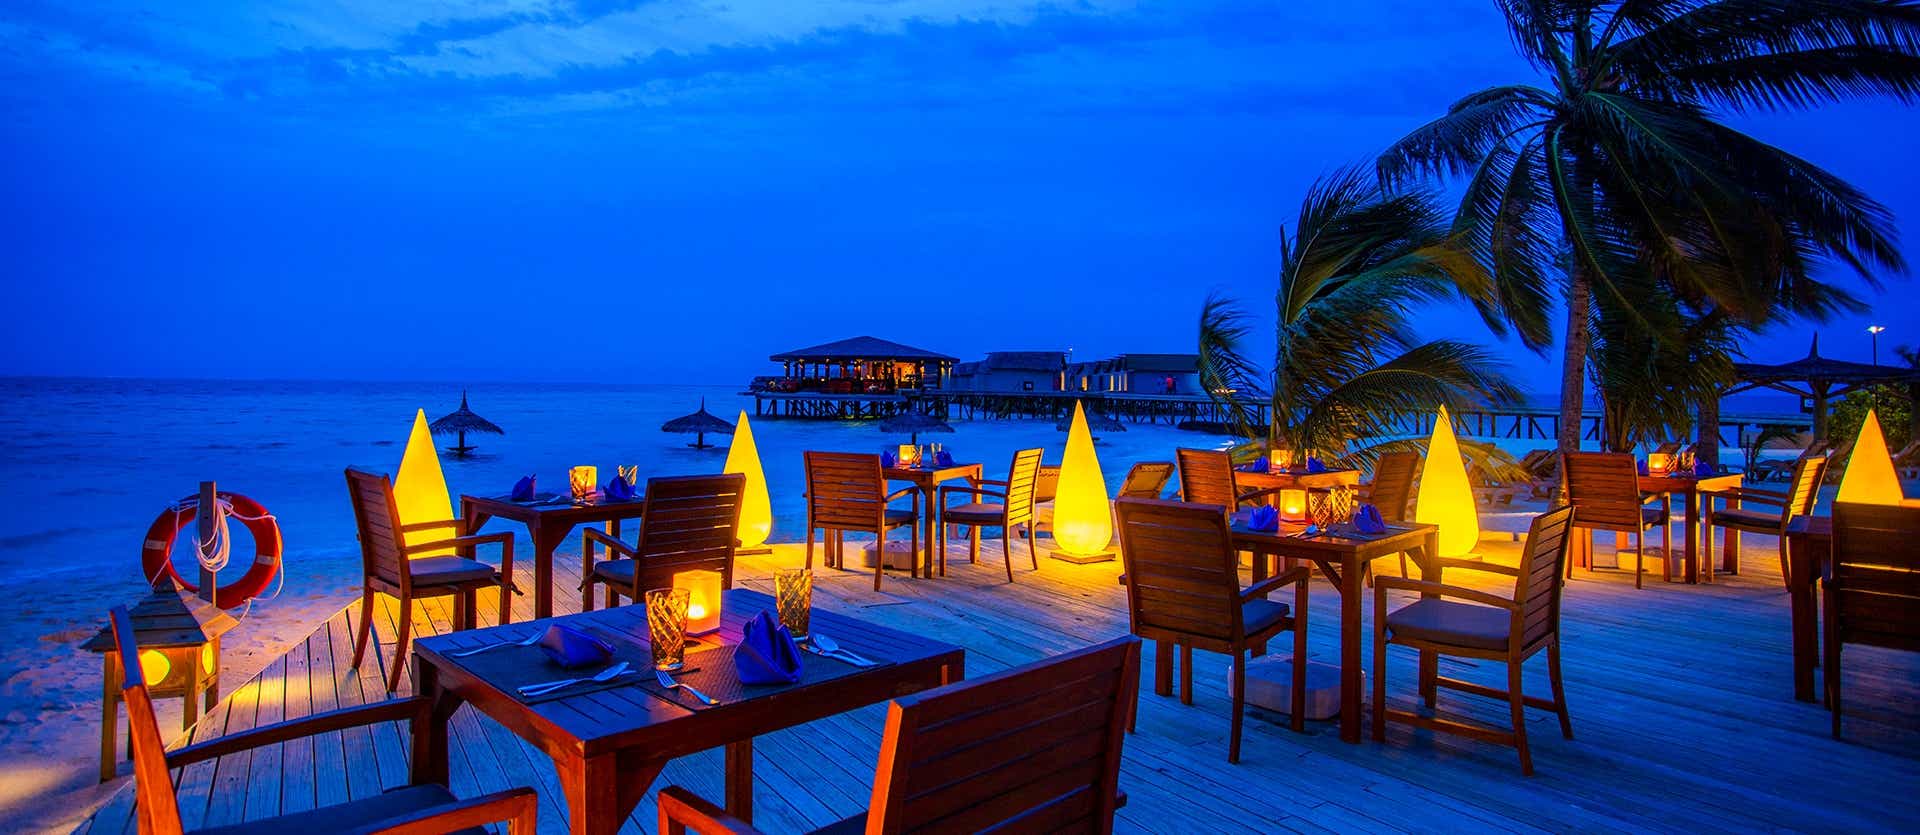 Centara Ras Fushi Resort & Spa <span class="iconos separador"></span> Maldives